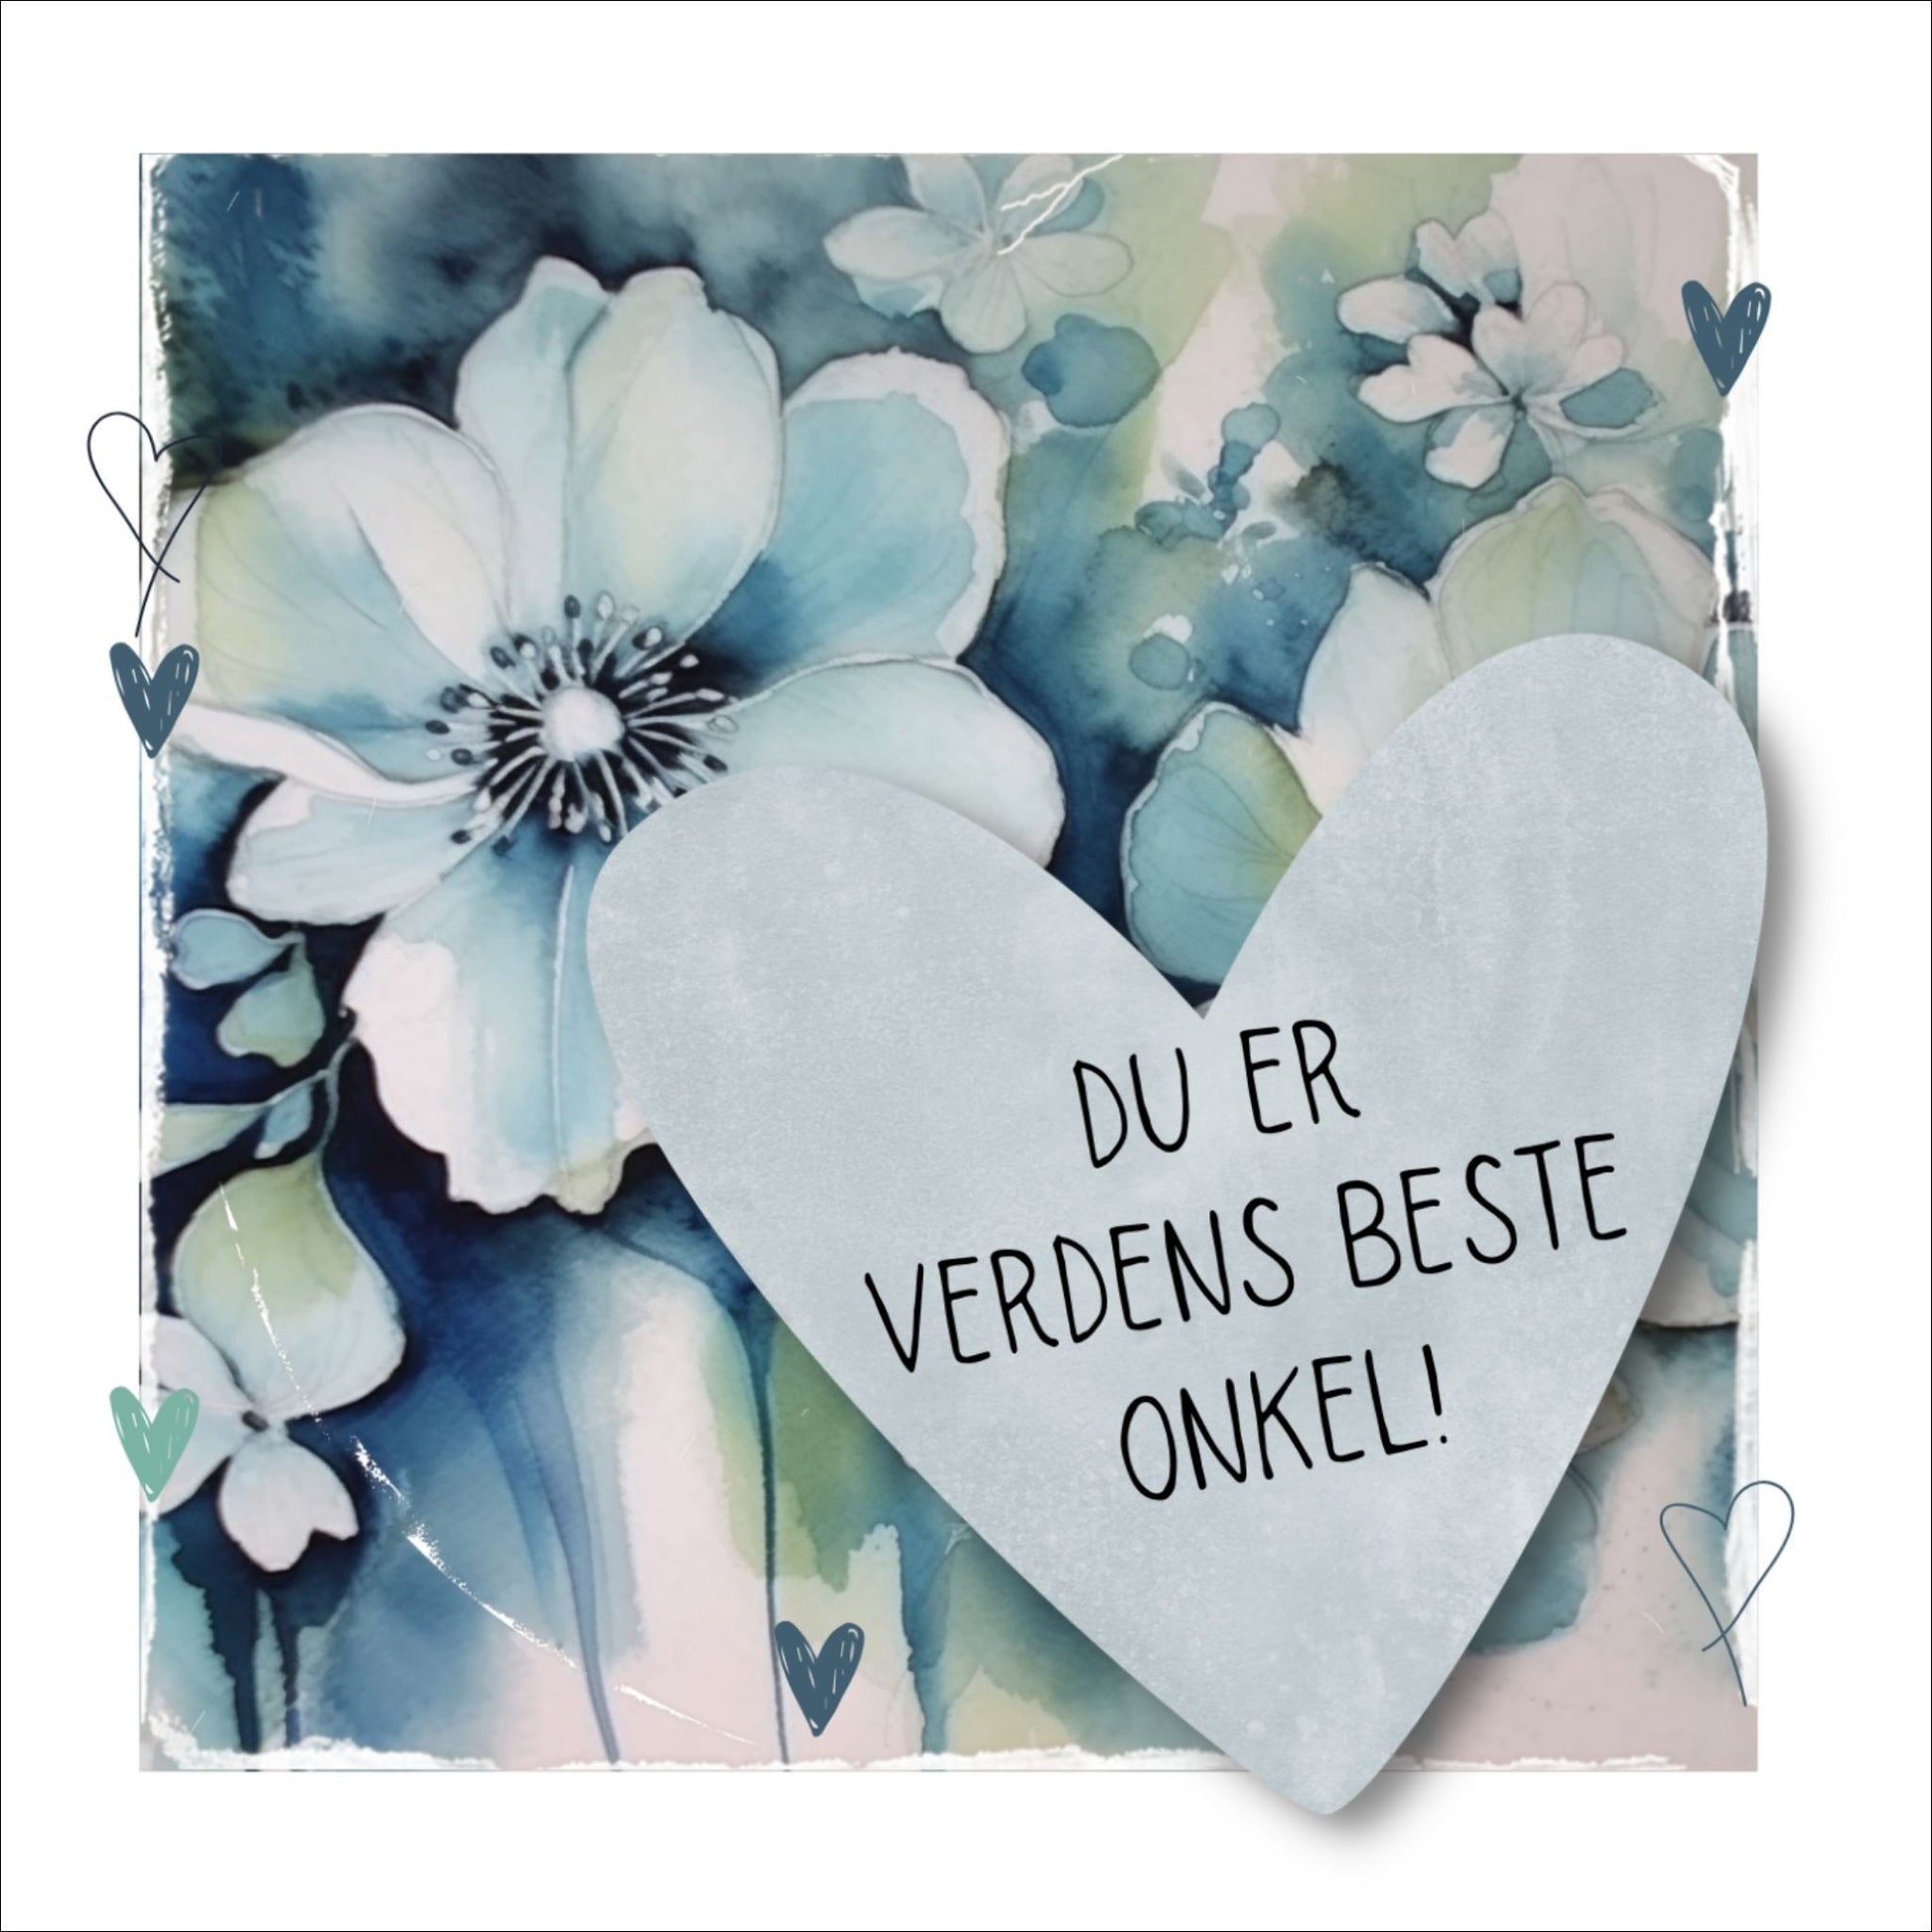 Grafisk plakat med et lyseblått hjerte påført tekst "Du er verdens beste onkel!". Bagrunn med blomster i blåtoner. Kortet har en hvit kant rundt på 1,5 cm.